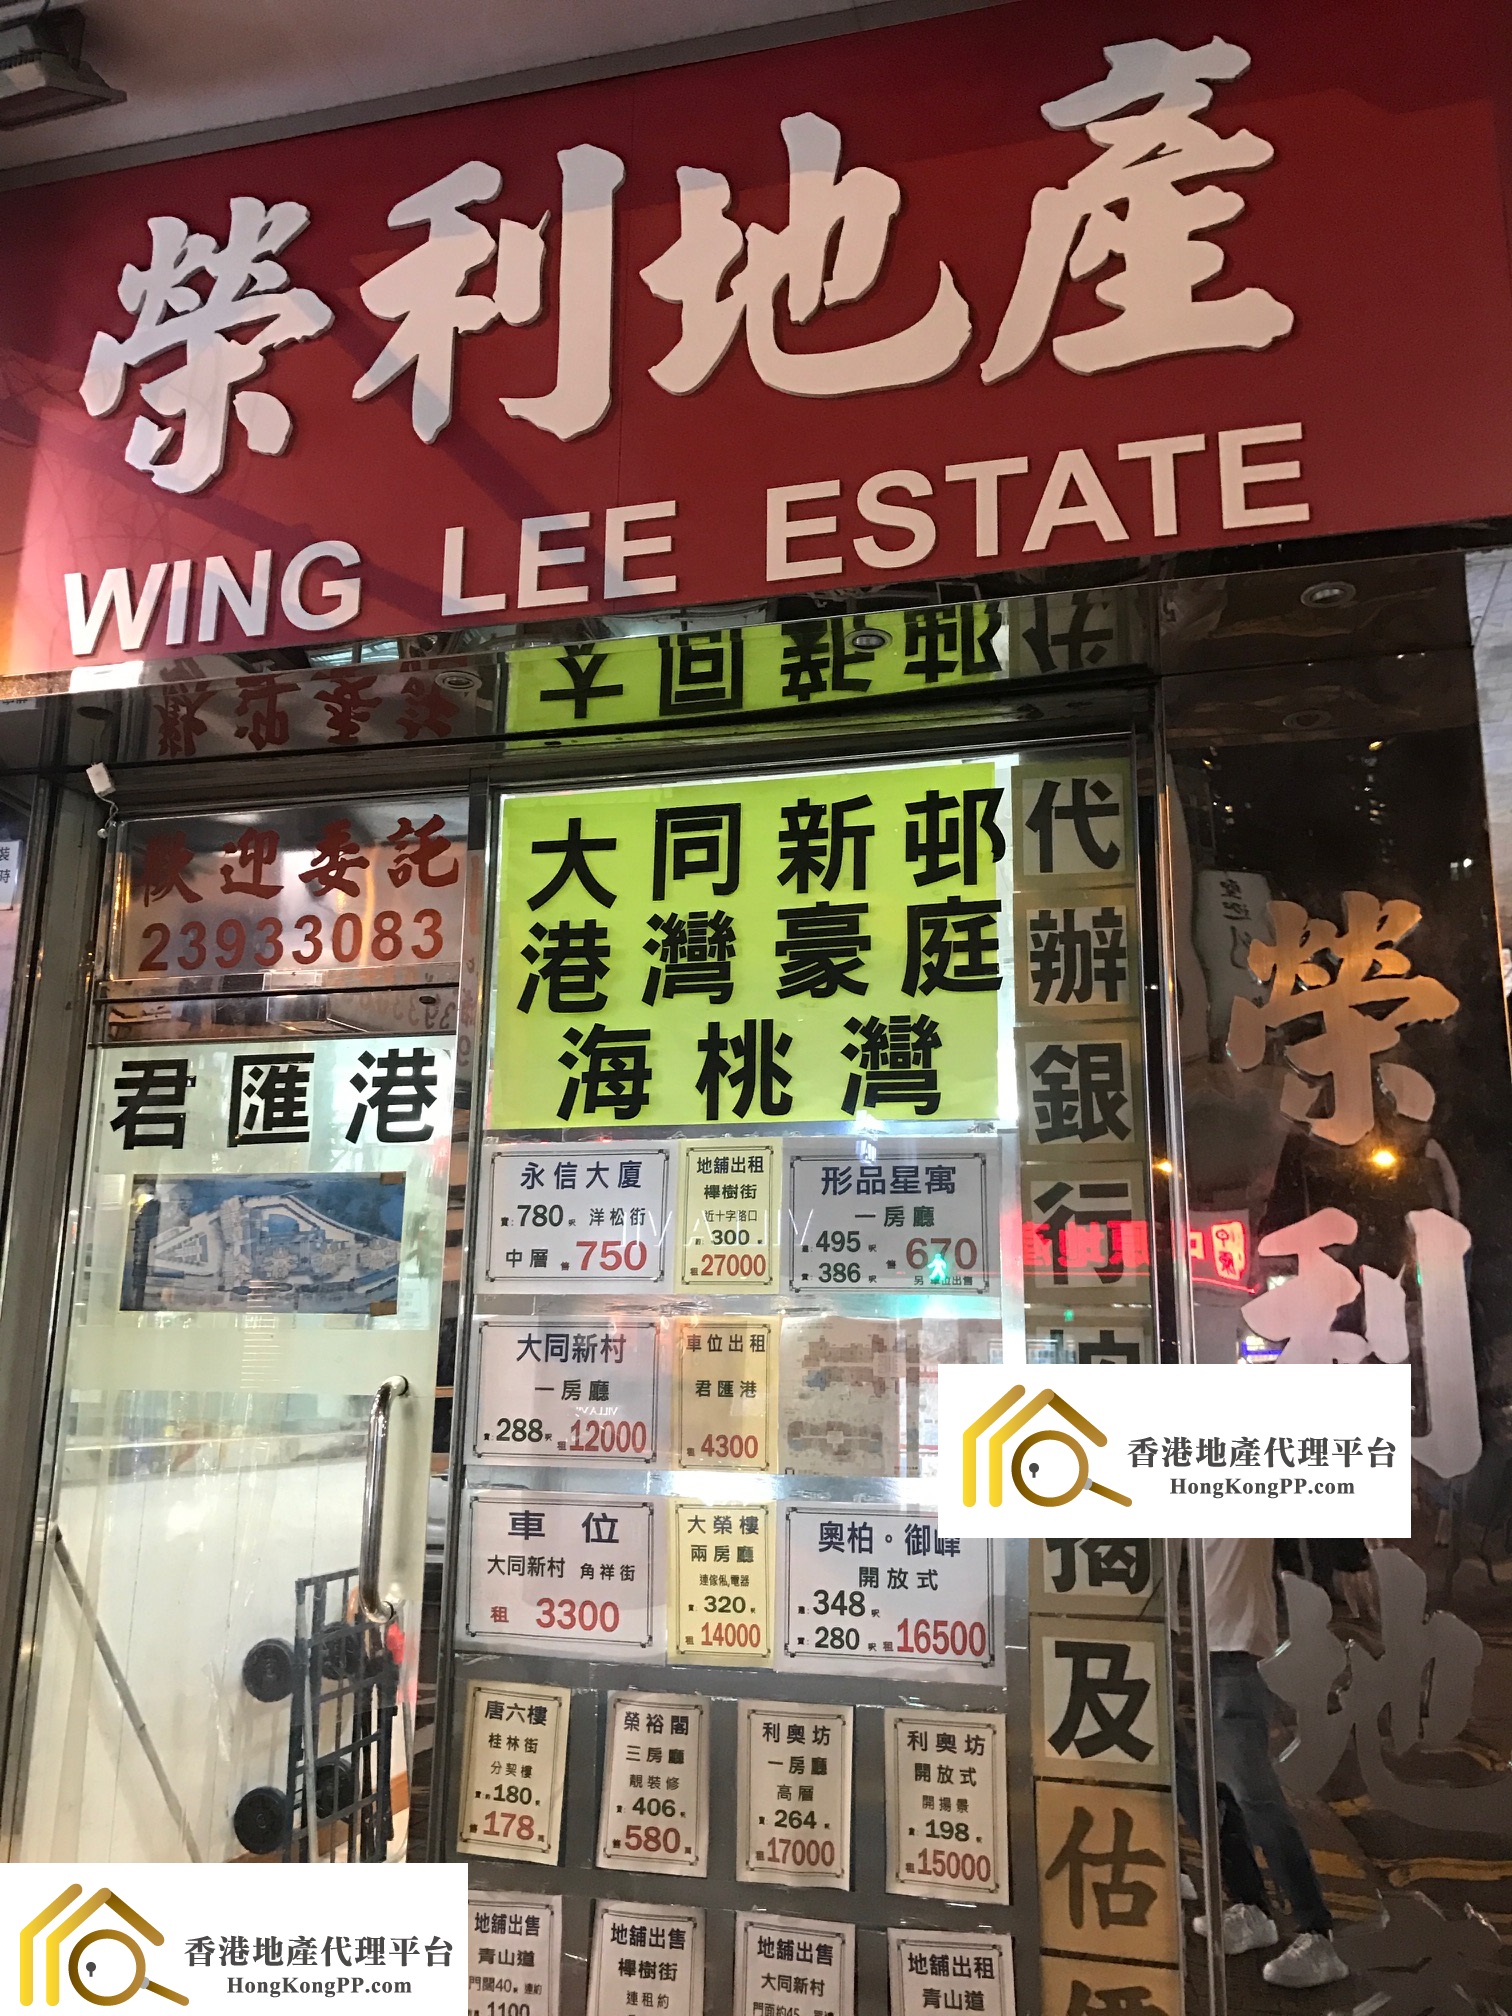 車位地產代理: 榮利地產 Wing Lee Estate